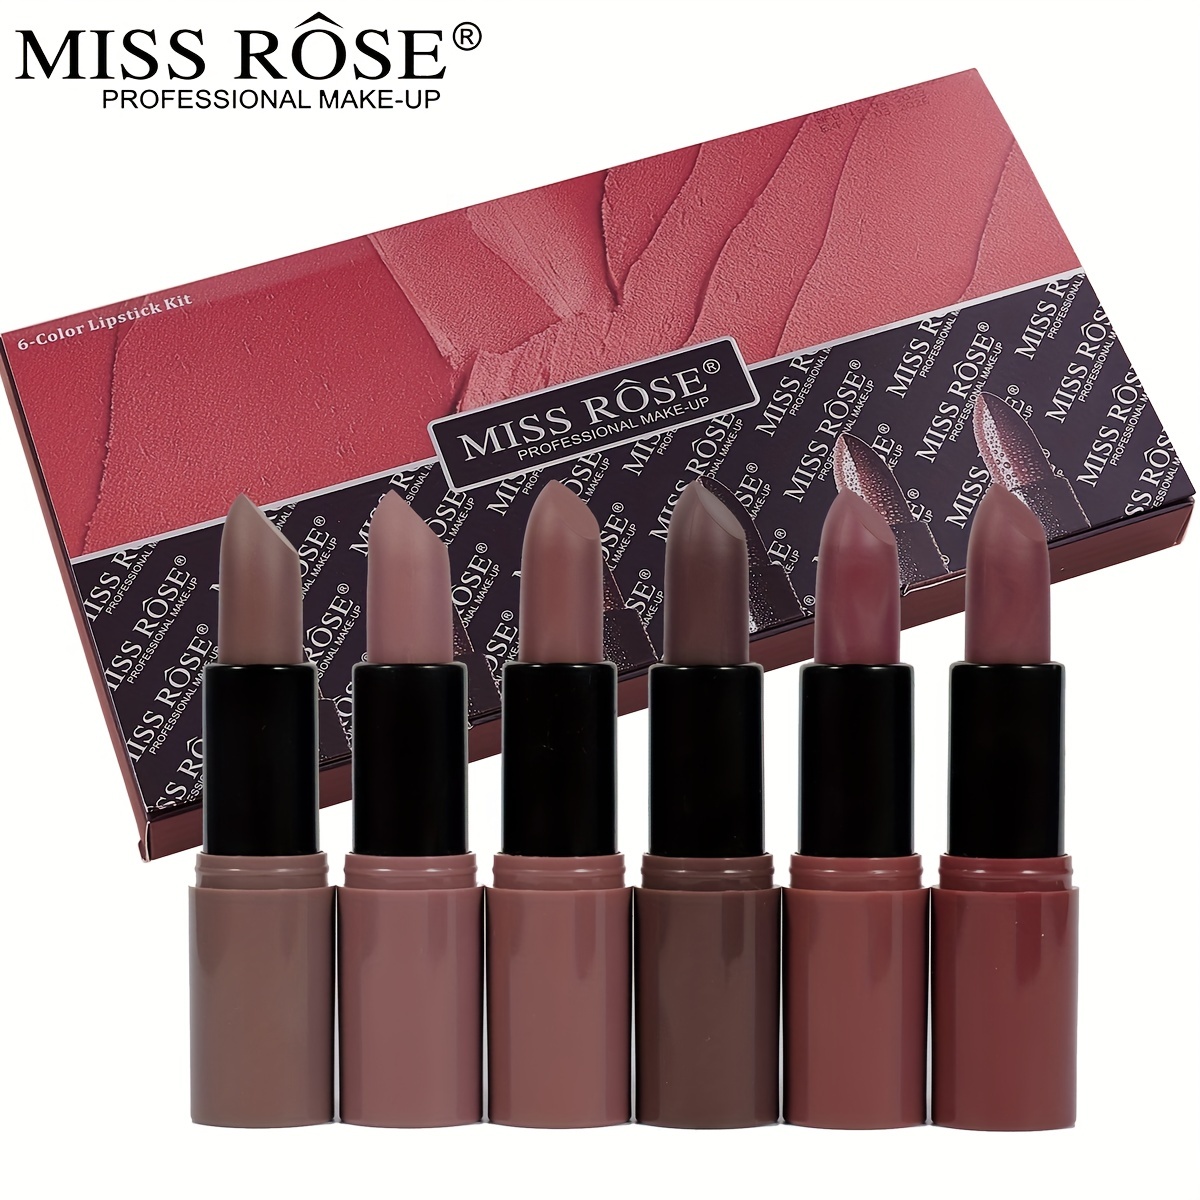 

Ensemble de 12 rouges à lèvres mats Miss Rose, 6 couleurs, hydratants et durables, offrant une couleur intense et résistante à l'eau, idéal pour la Saint-Valentin